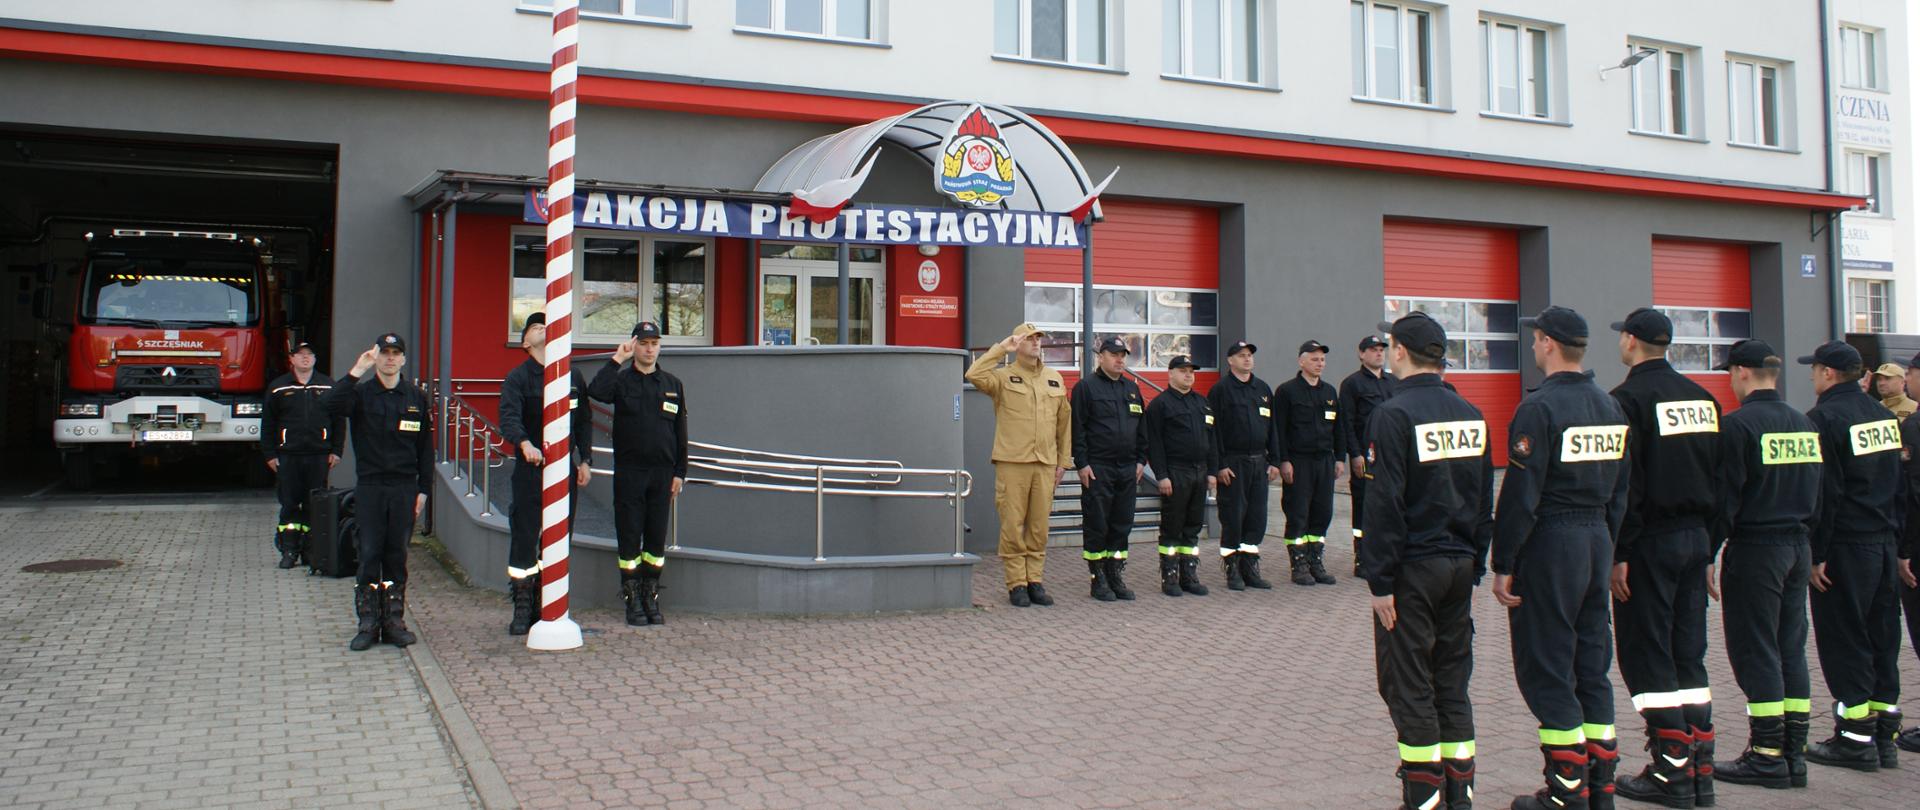 Na zdjęciu strażacy w ubraniach koloru piaskowego i czarnego stoją naprzeciw siebie przed budynkiem, w tle zaparkowane pojazdy oraz maszt flagowy.